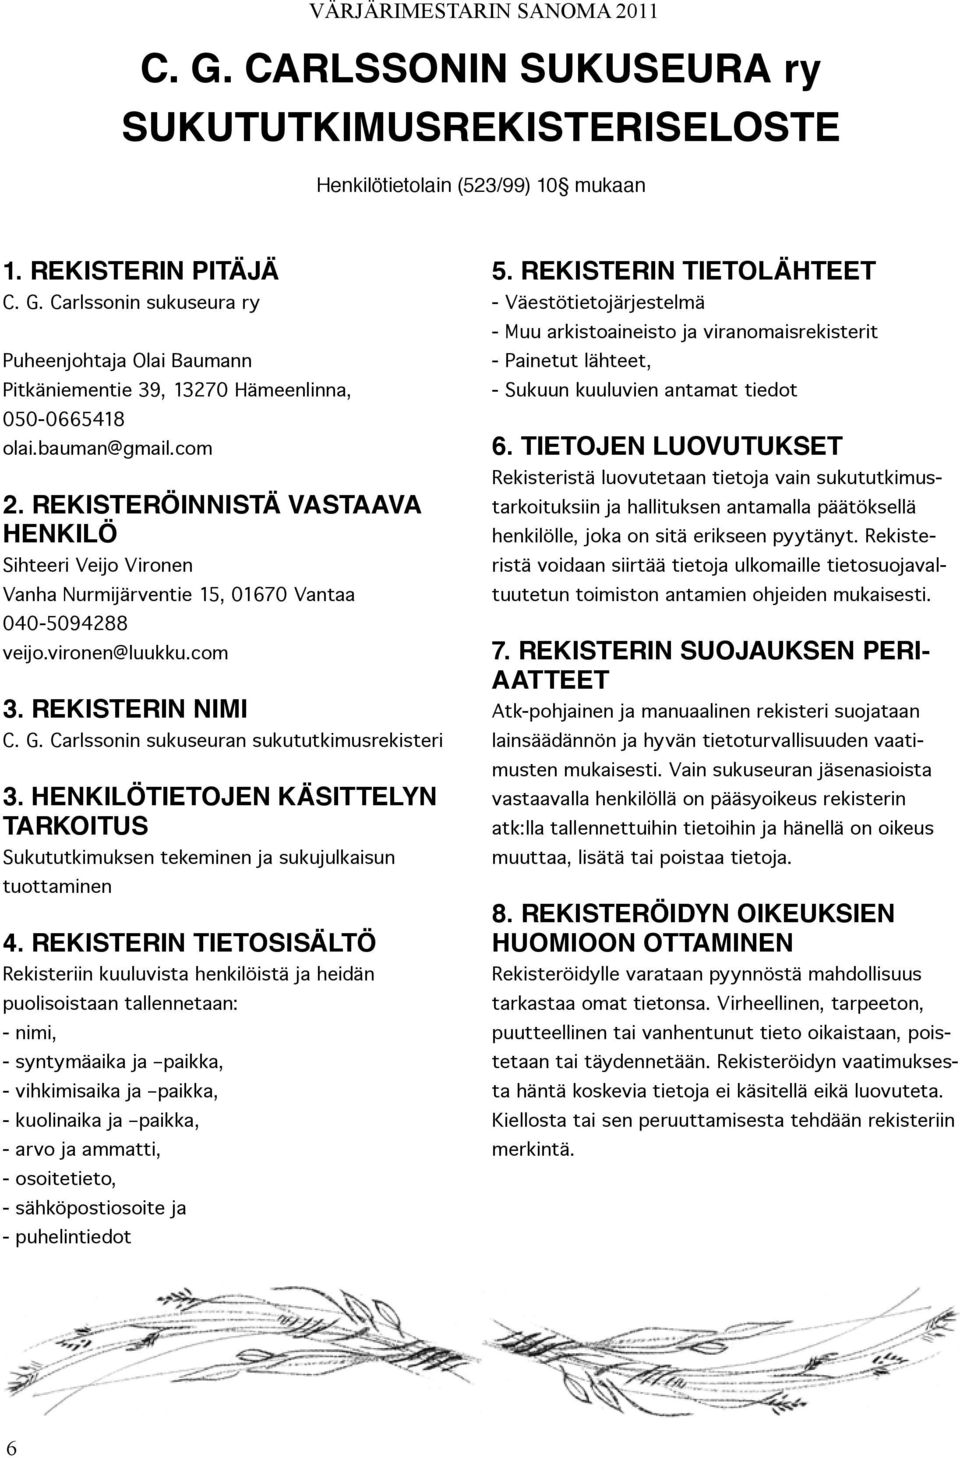 Carlssonin sukuseuran sukututkimusrekisteri 3. HENKILÖTIETOJEN KÄSITTELYN TARKOITUS Sukututkimuksen tekeminen ja sukujulkaisun tuottaminen 4.